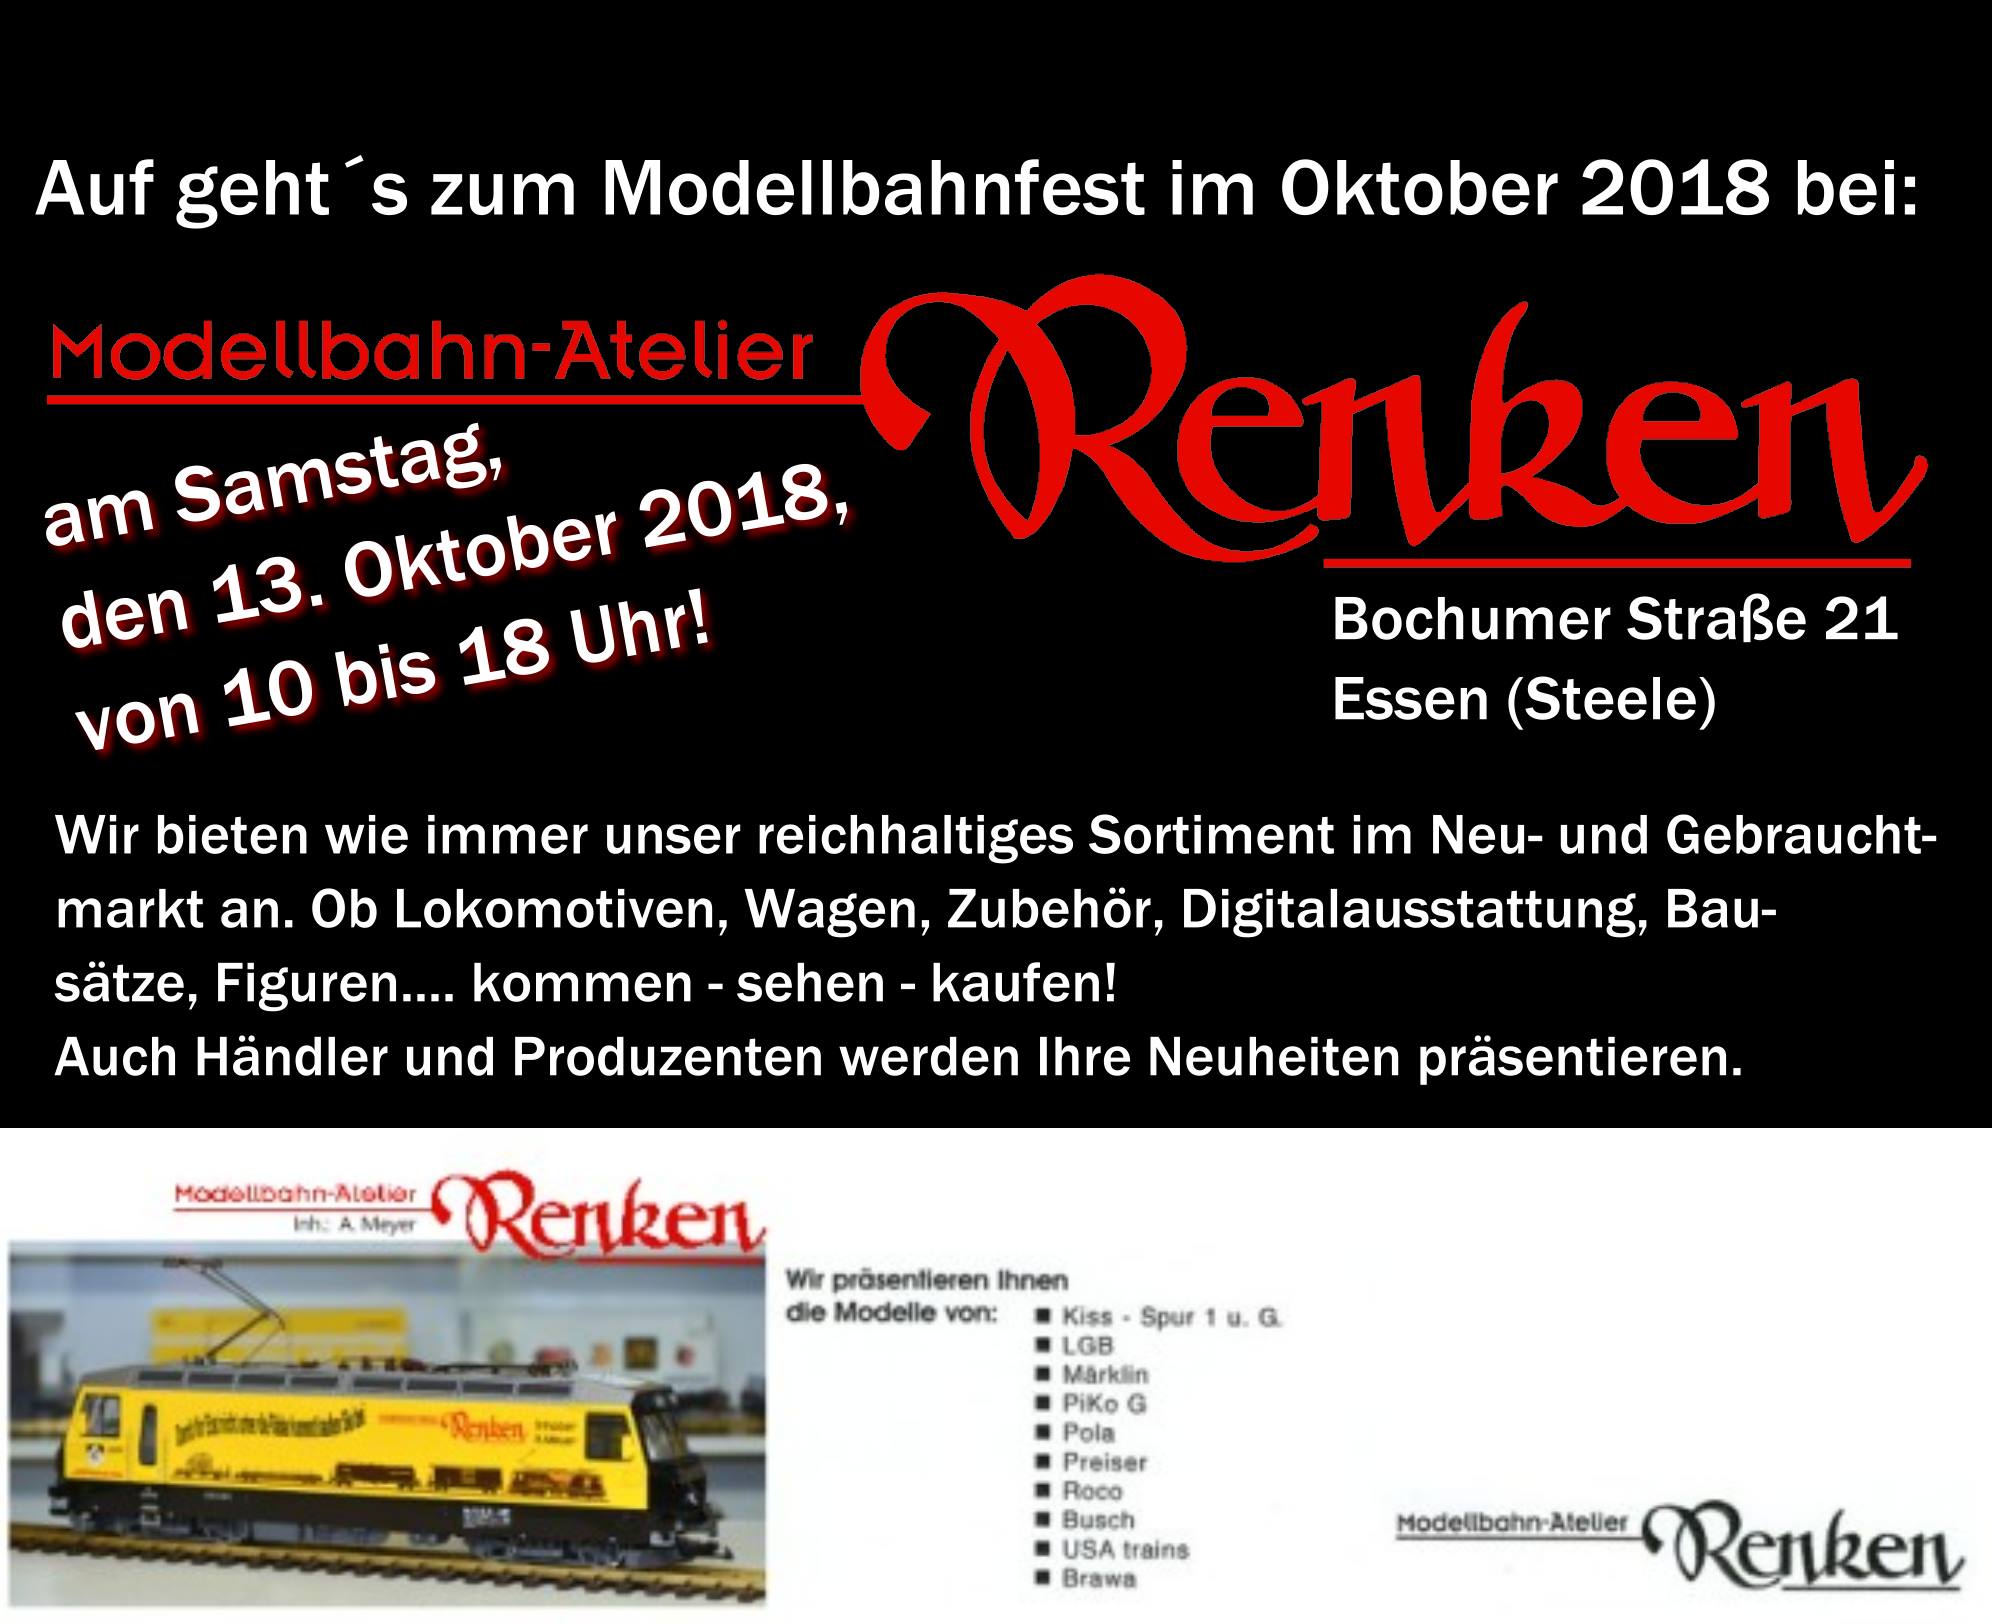 Zum Schluss unsere Einladung zum Oktoberfest 2018 - Modellbahn-Atelier-Renken in Essen.